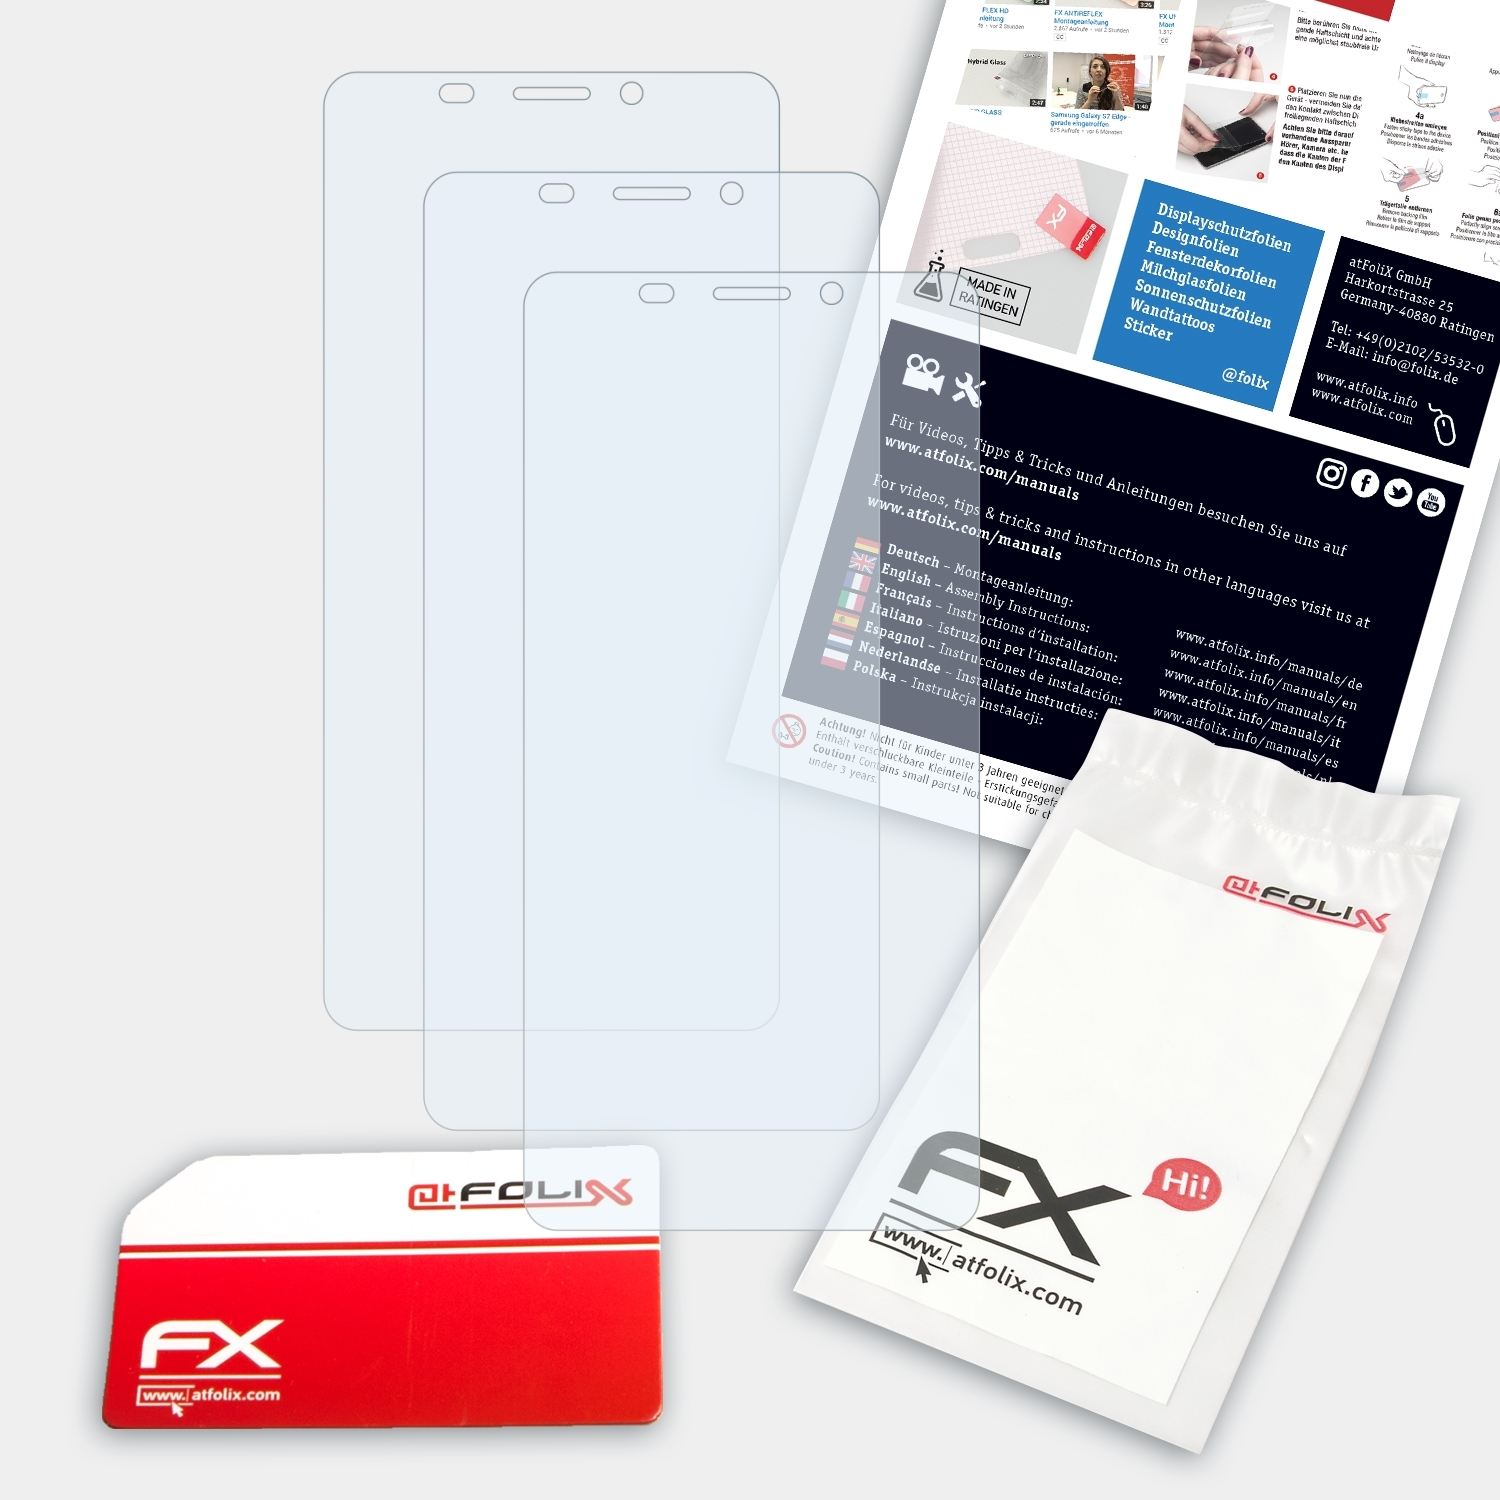 ATFOLIX 3x Doopro P1 FX-Clear Displayschutz(für Pro)